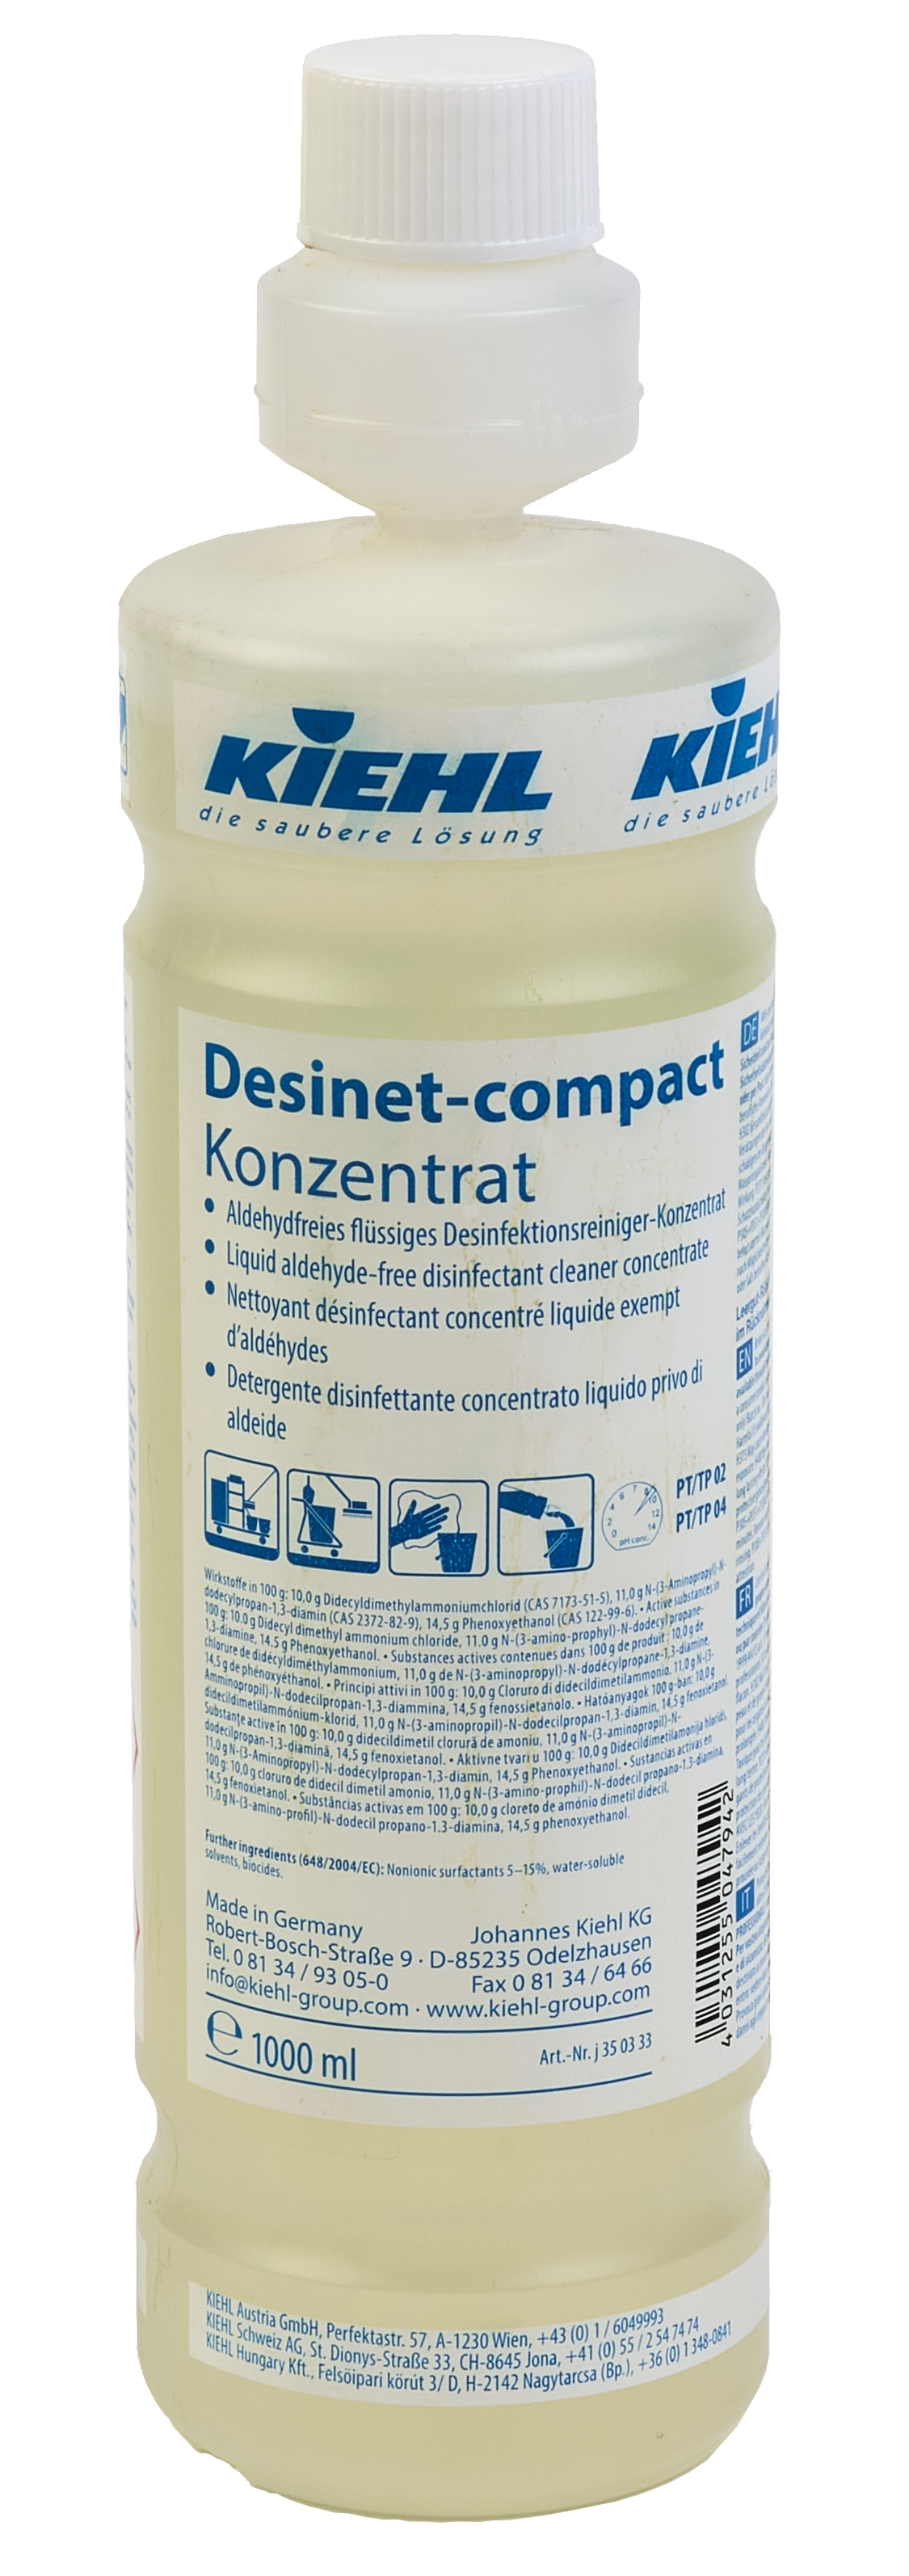 Desinfektionsreiniger-Konzentrat Desinet-compact von Kiehl - 1 Liter Flasche